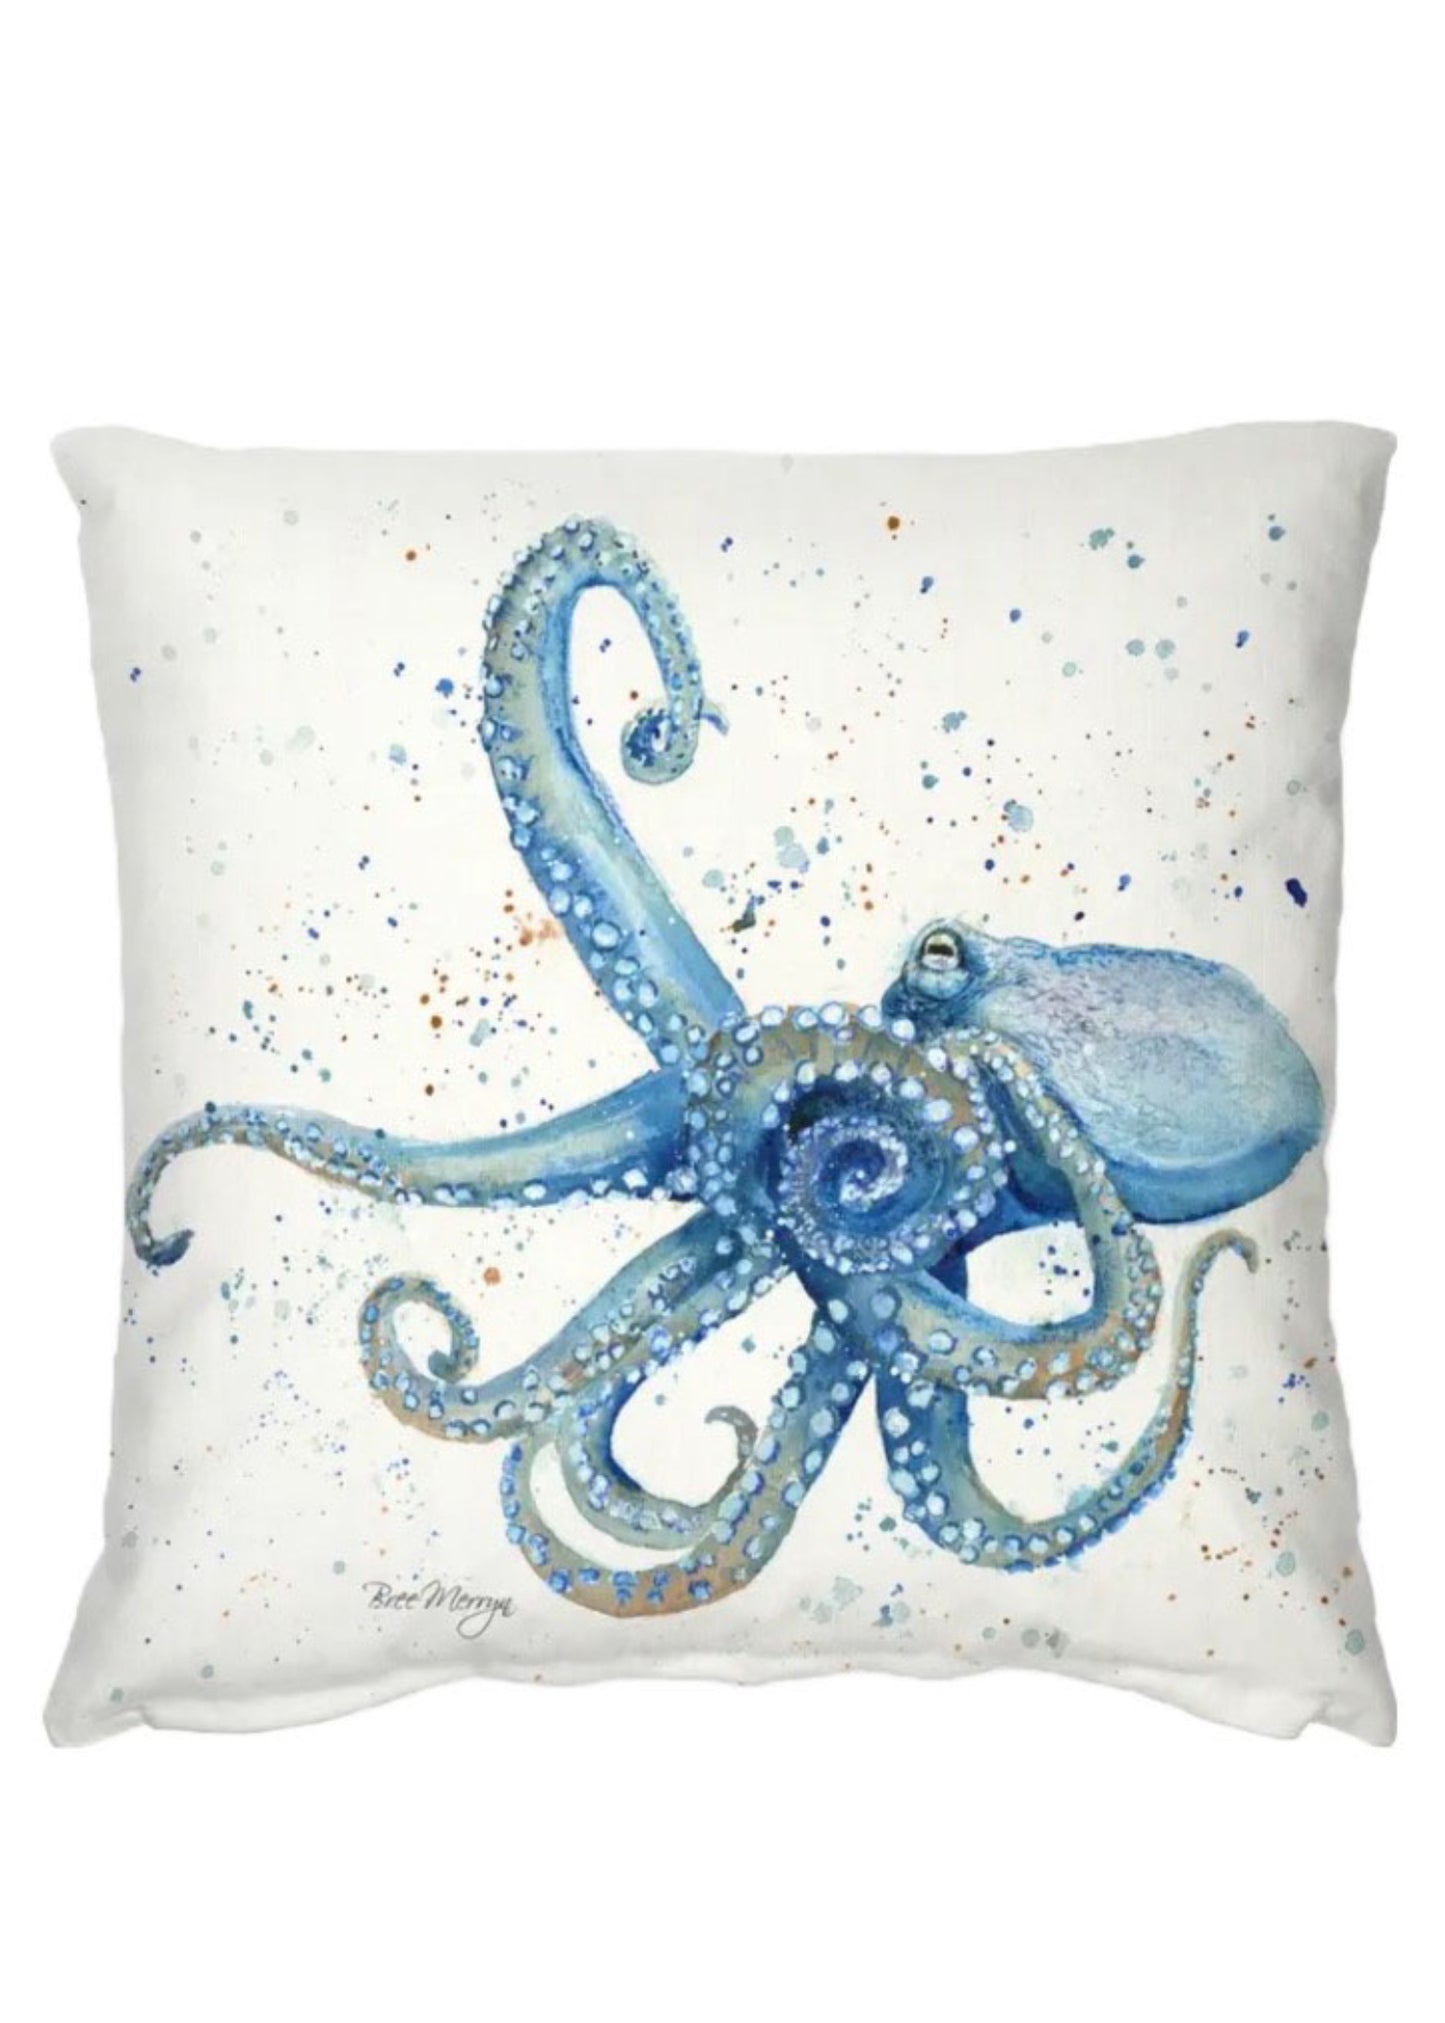 Octavia Octopus Cushion